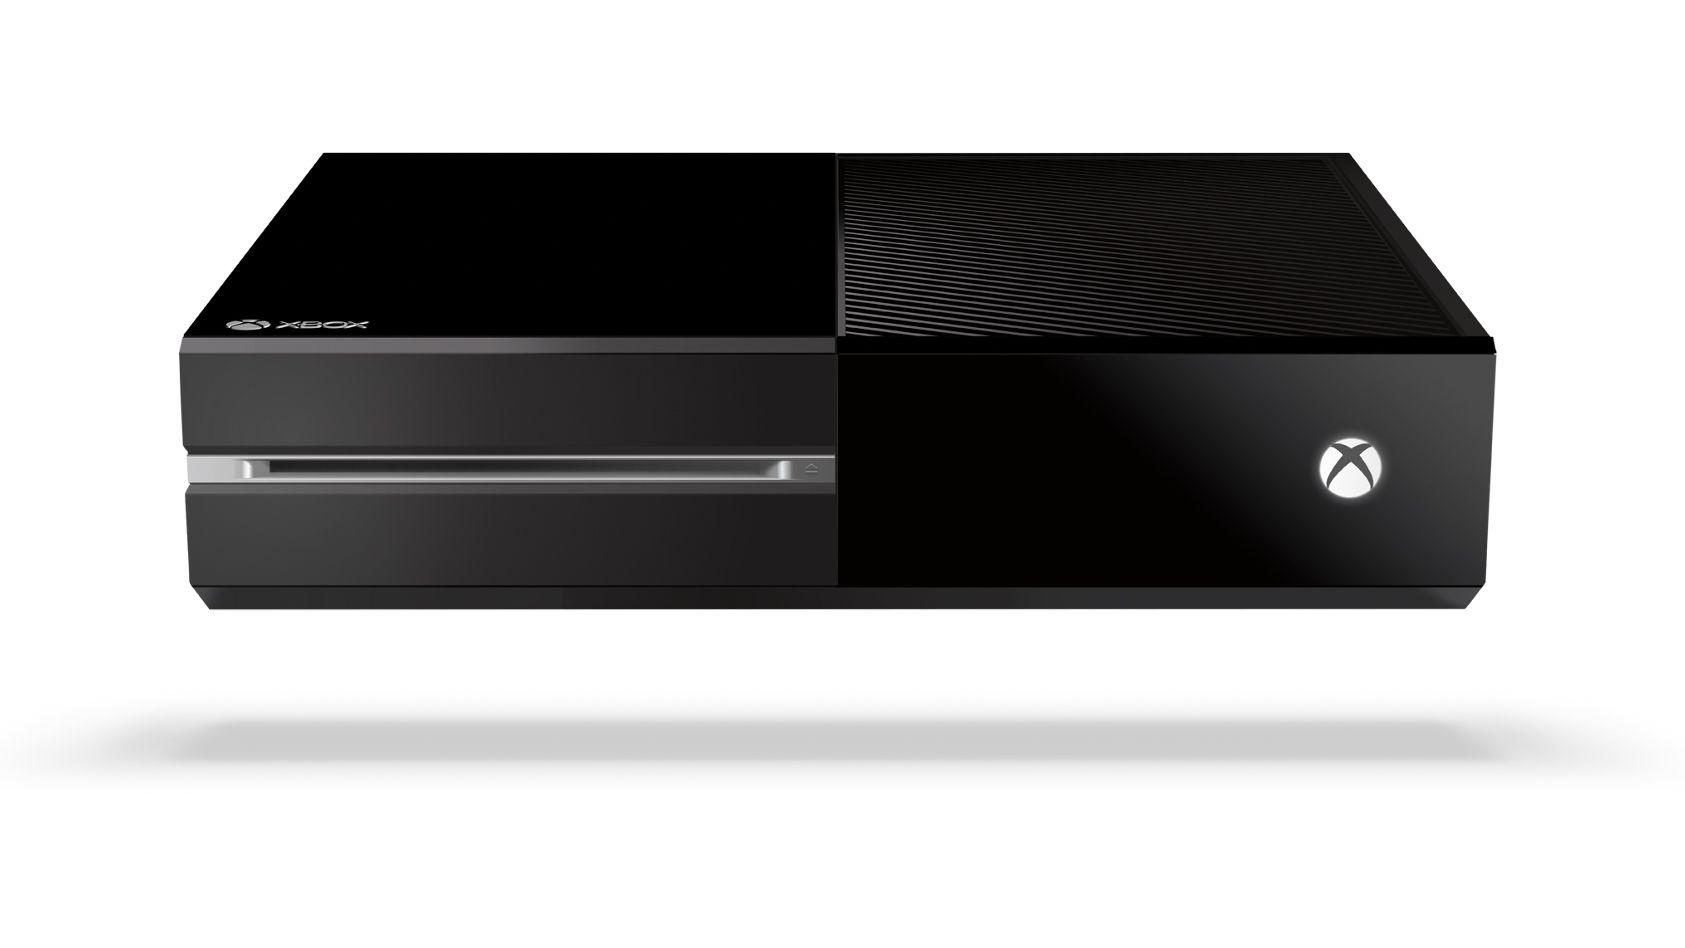 Masívne čierne telo pôvodnej konzoly Xbox One nie je práve dizajnovým skvostom.